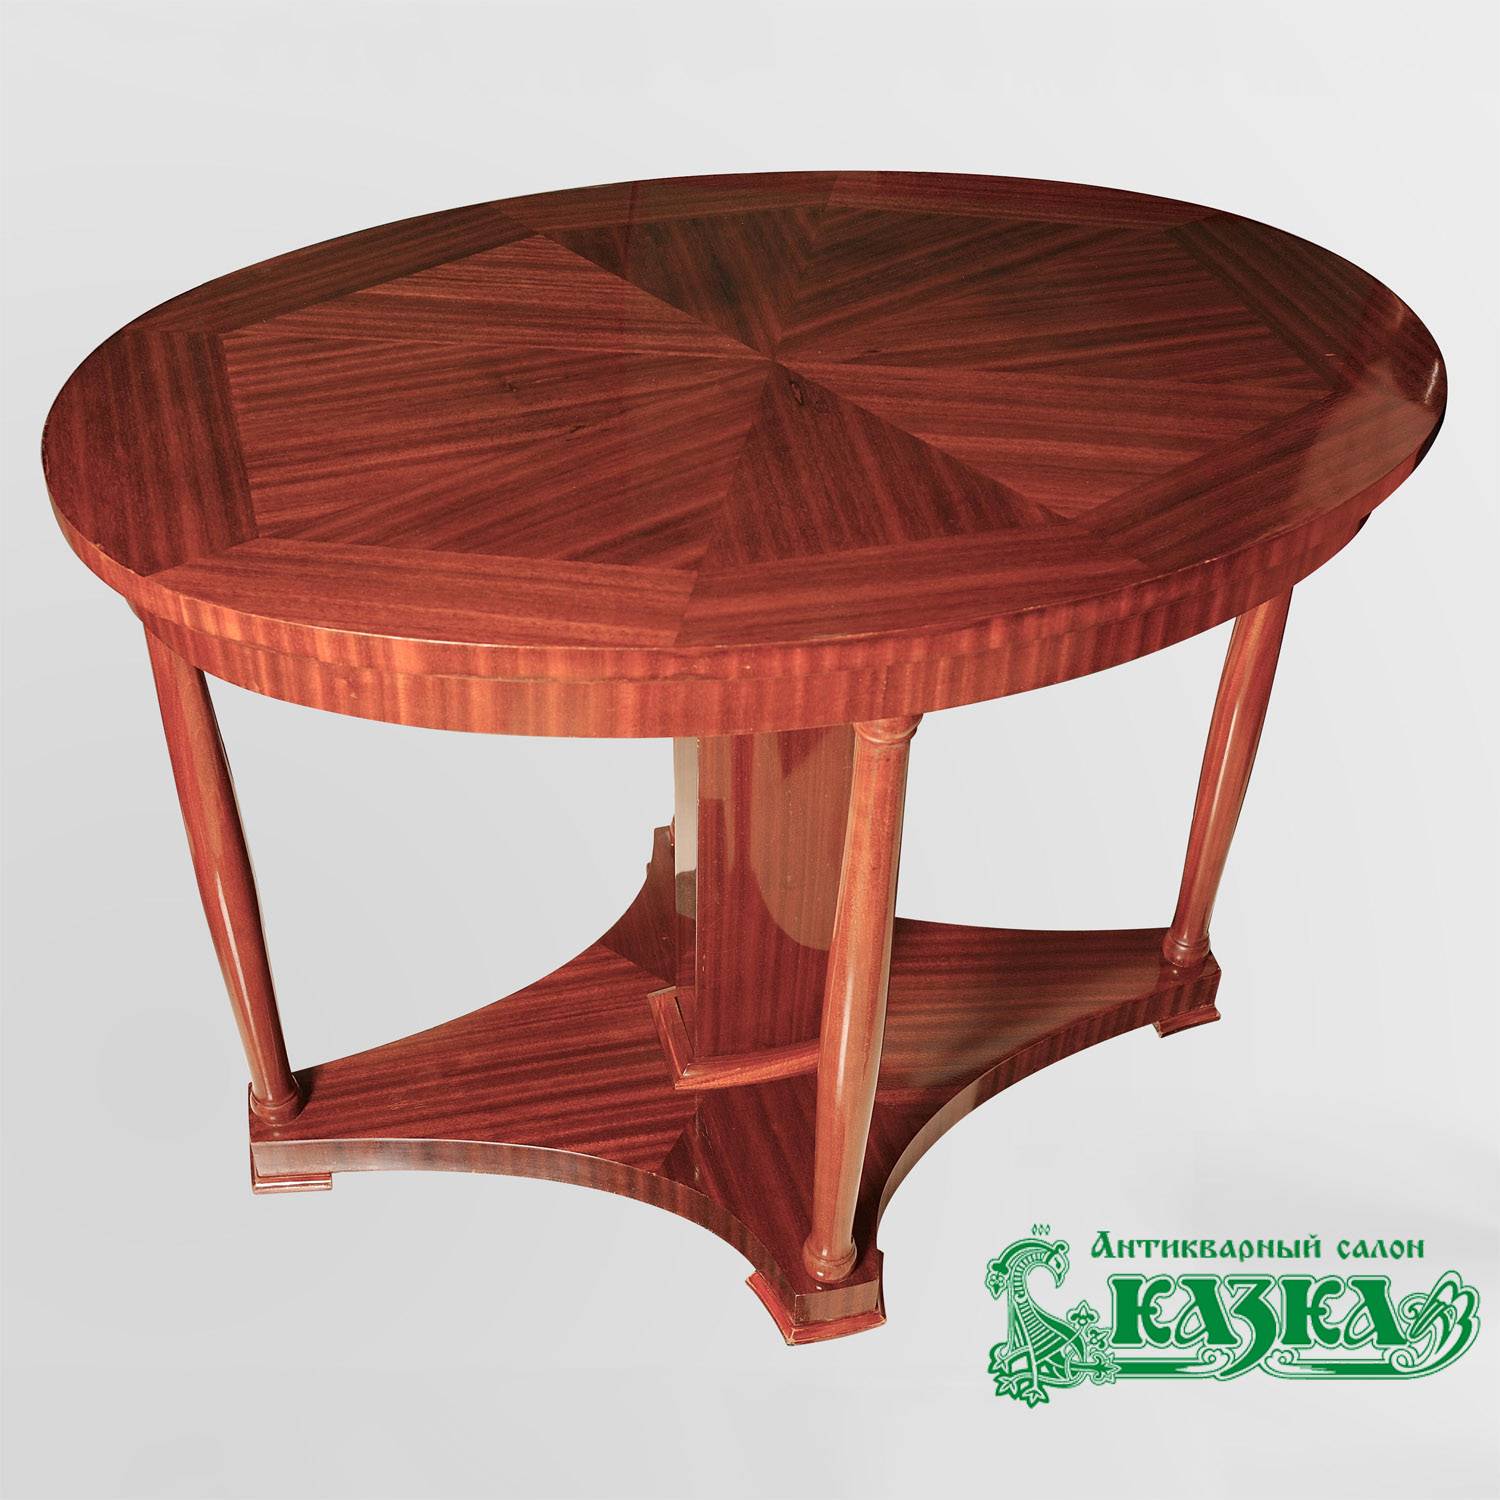 Овальный гостиный стол из красного дерева начала 20 века